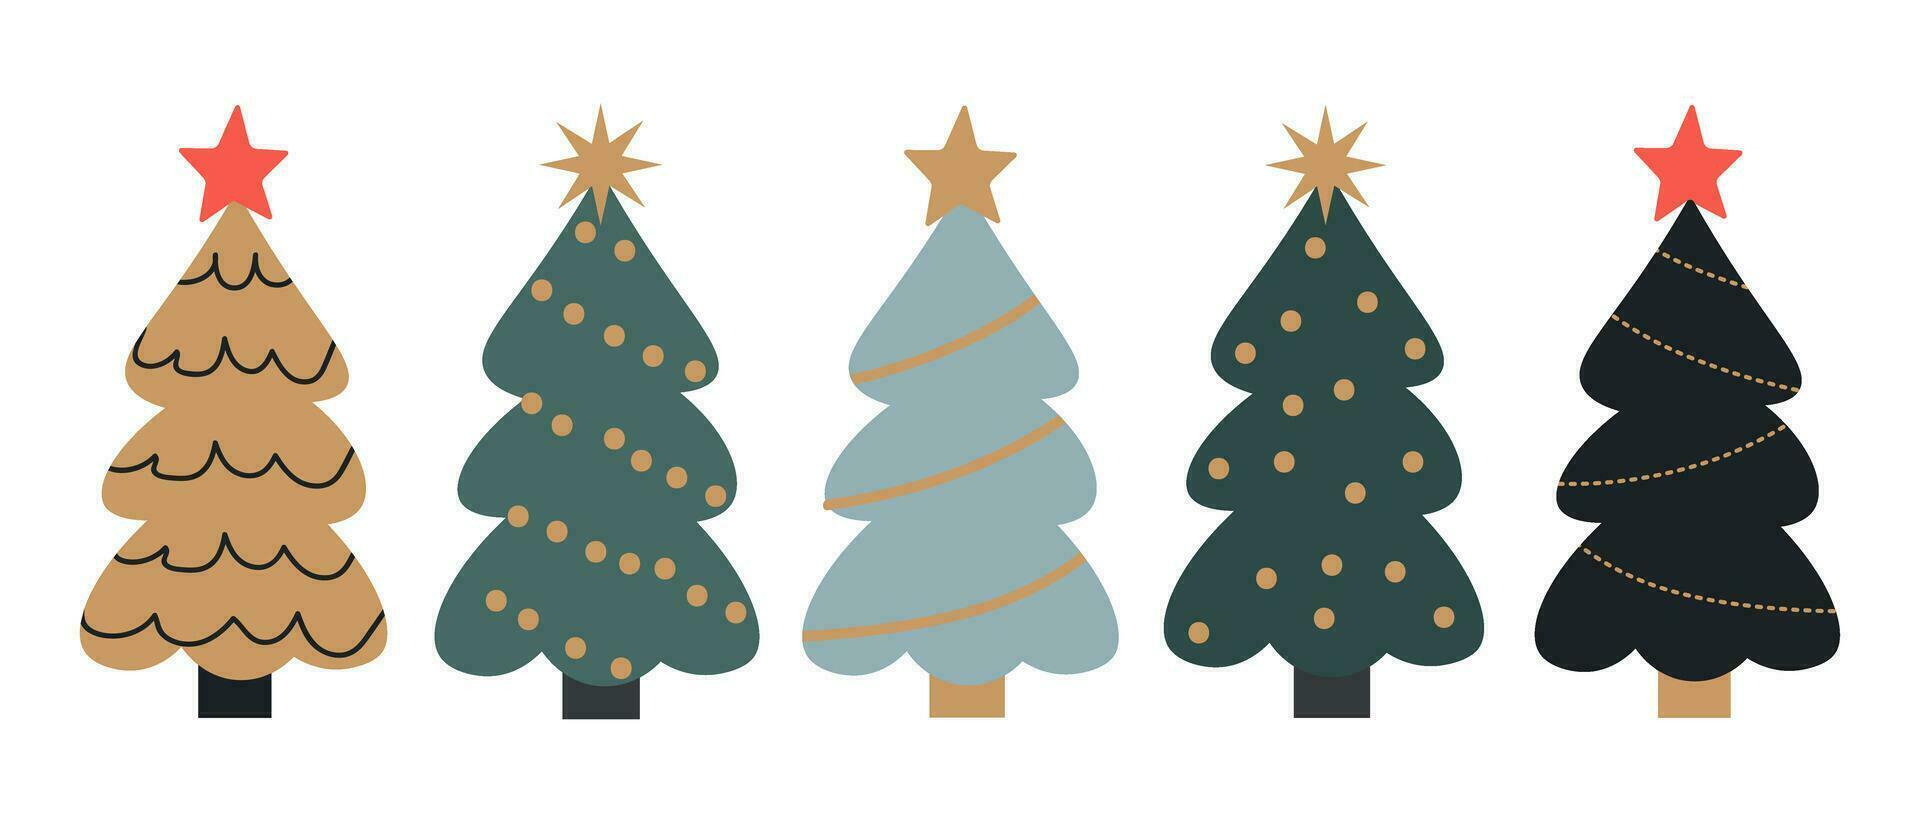 impostato di inverno colorato Natale alberi con decorazioni. volontà fare per stampato volantini, striscioni, scrapbooking, manifesti vettore